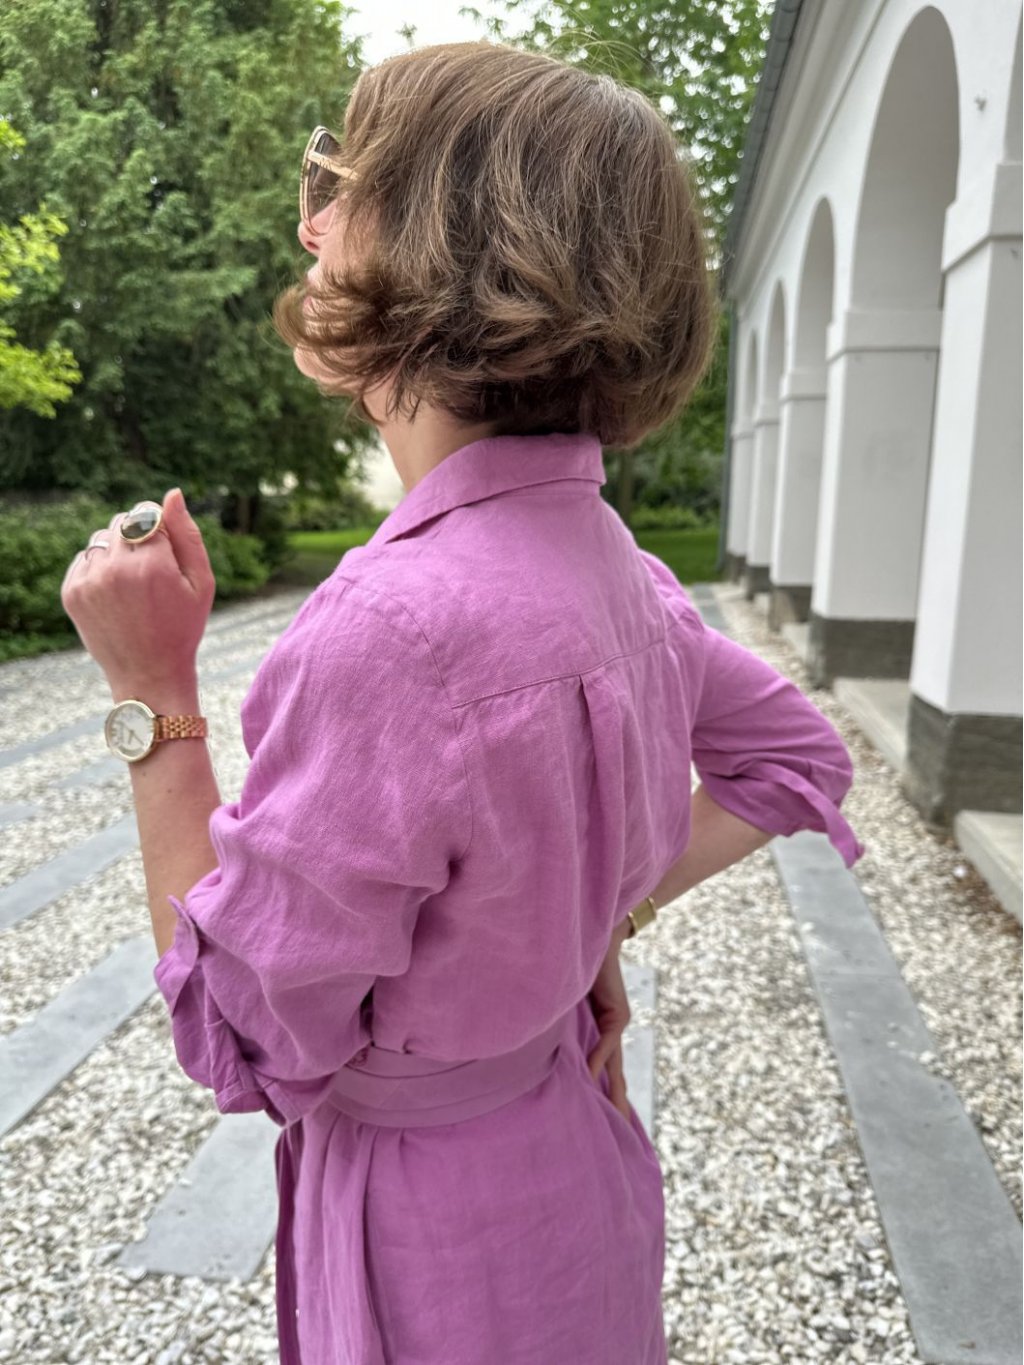 Šaty Kyra Alondra světle fialové košilové lněné 